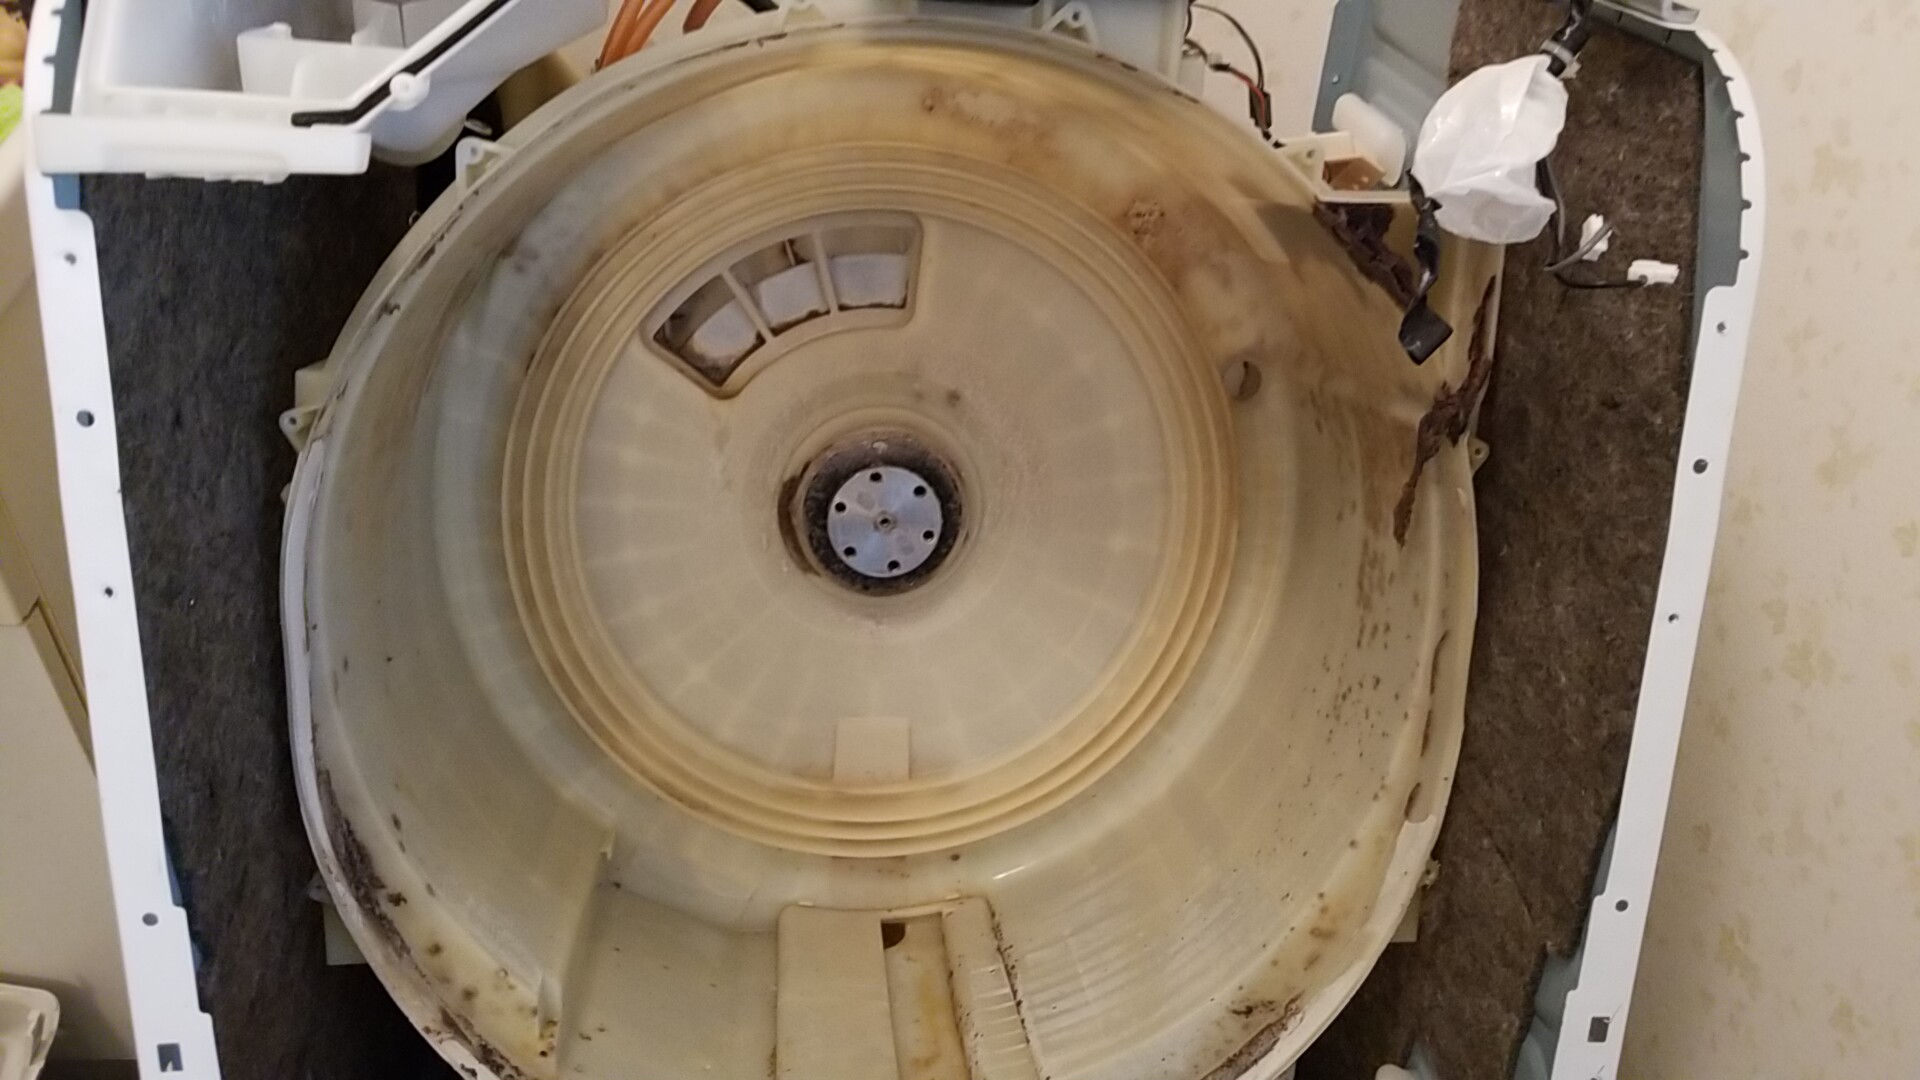 愛知県日進市TOSHIBA製ドラム洗濯機分解清掃同時乾燥系統清掃